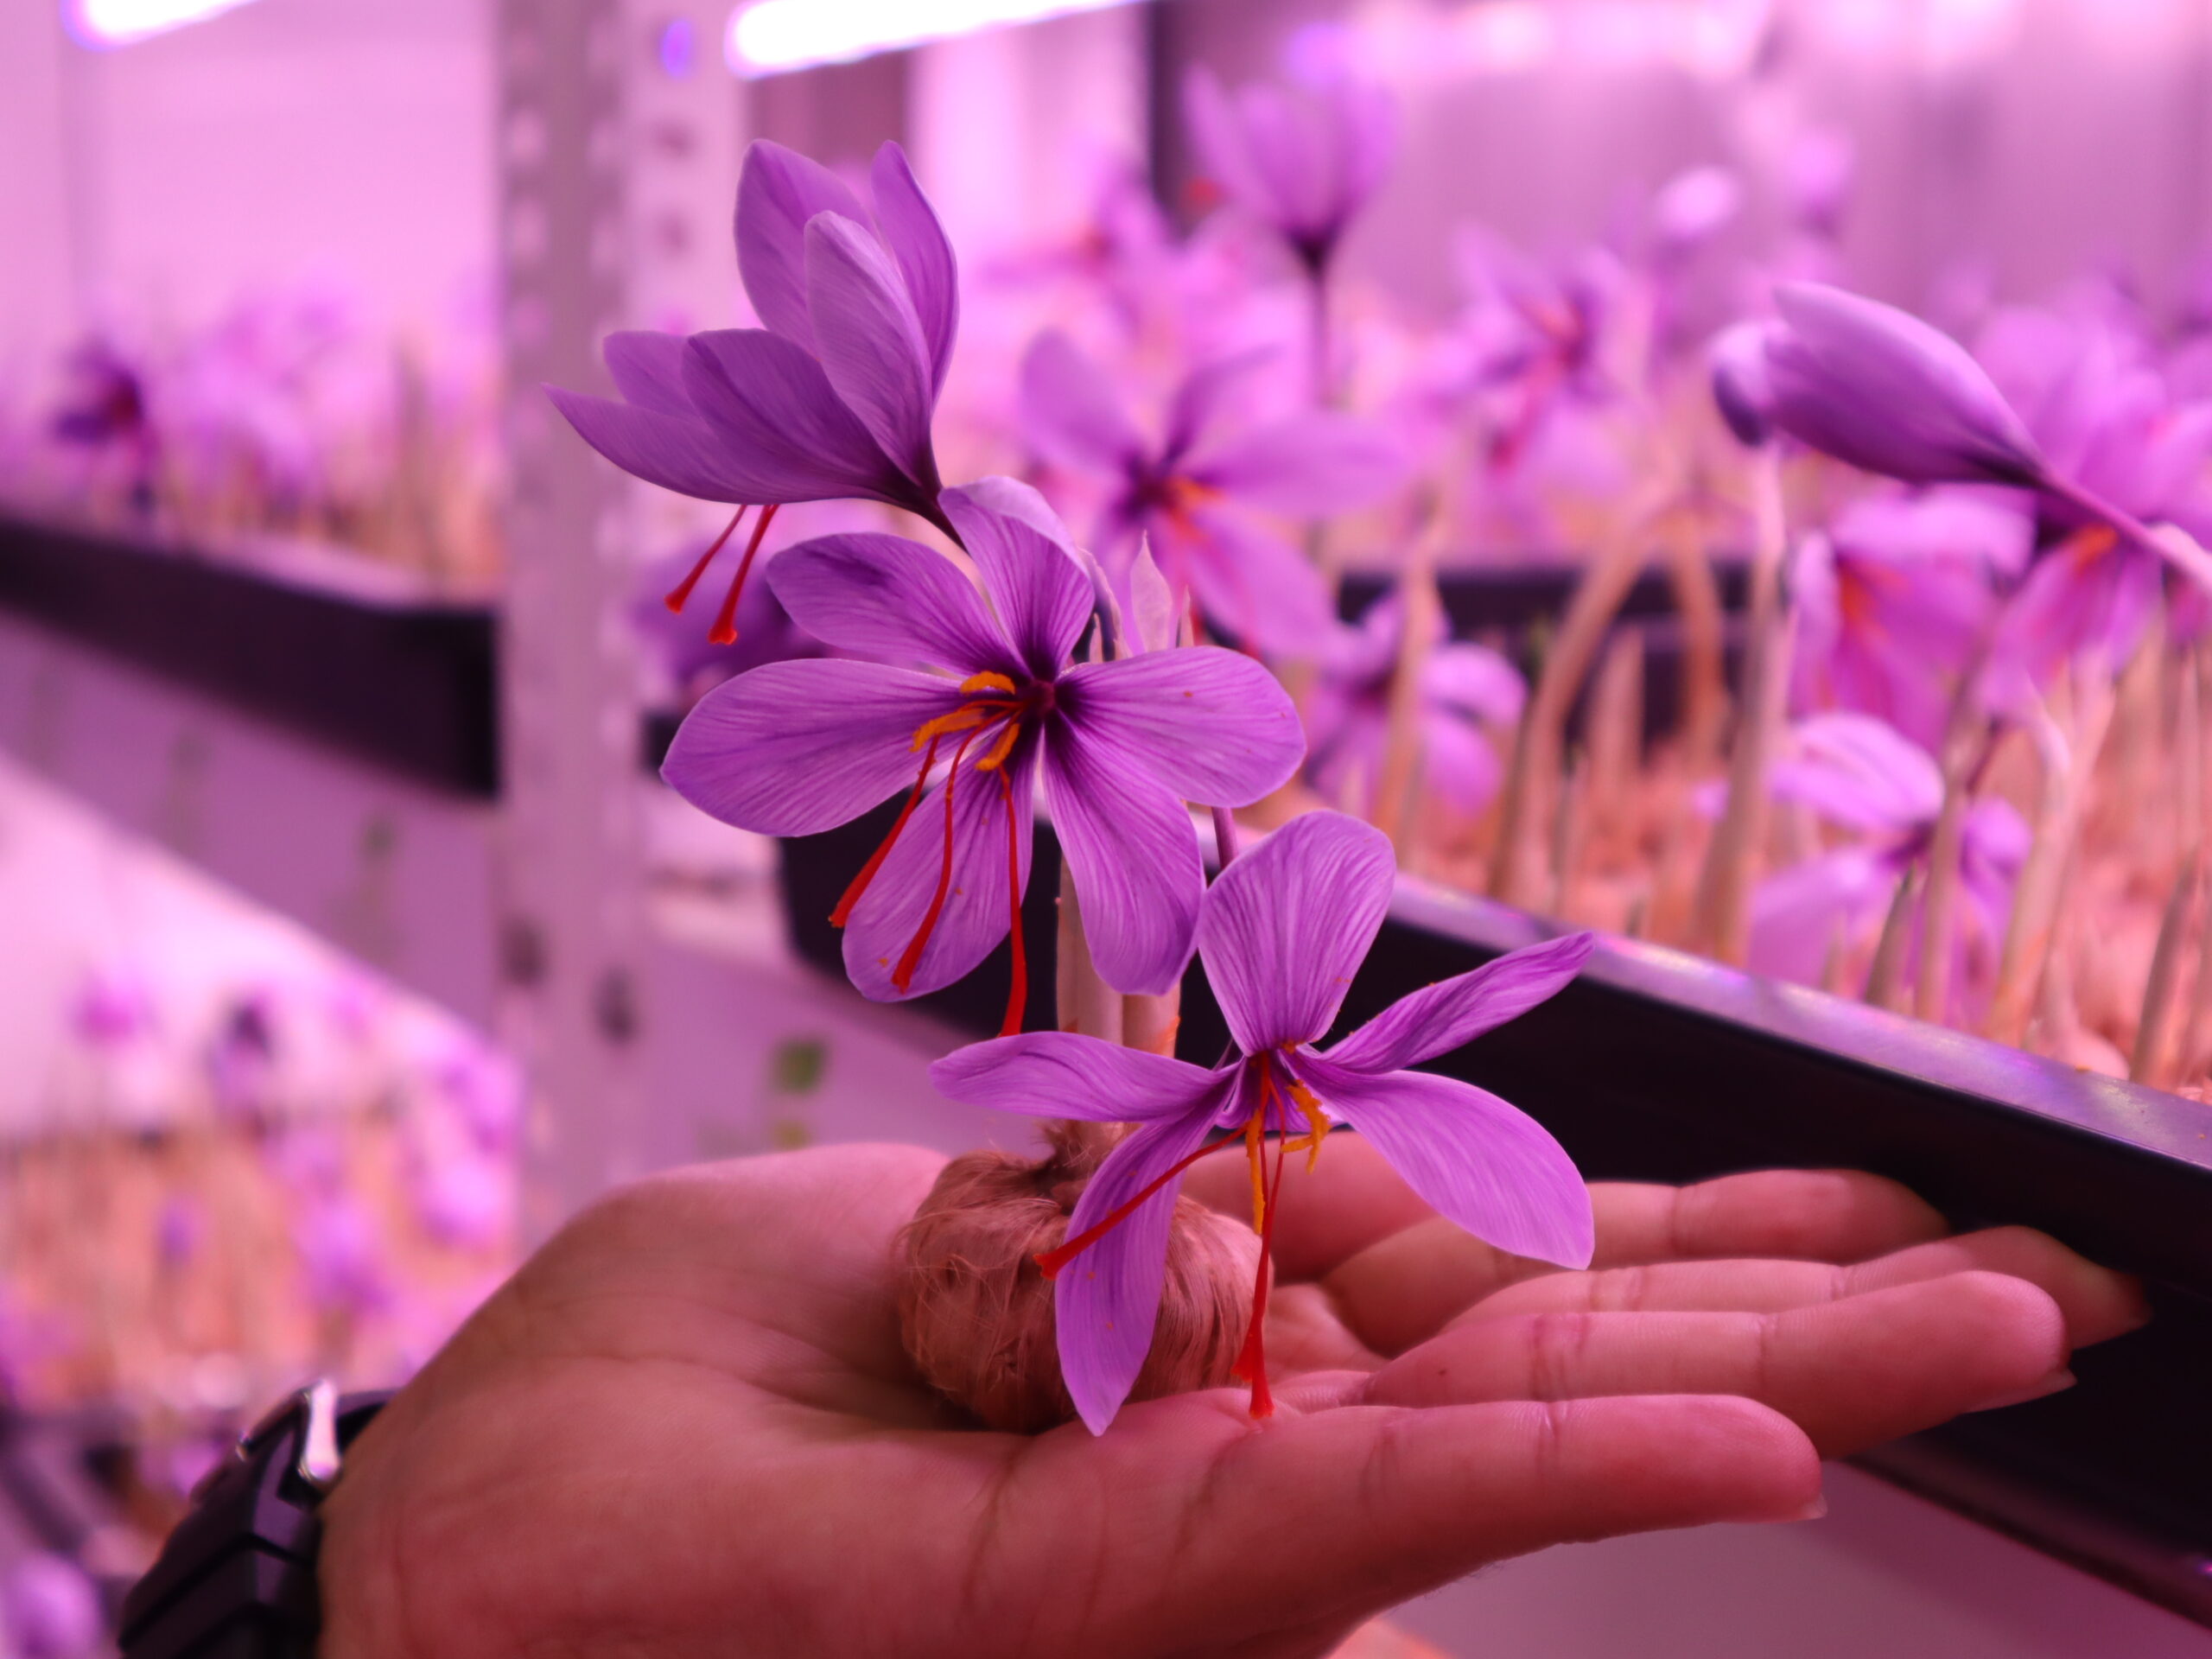 Hydroponic Saffron Cultivation Techniques